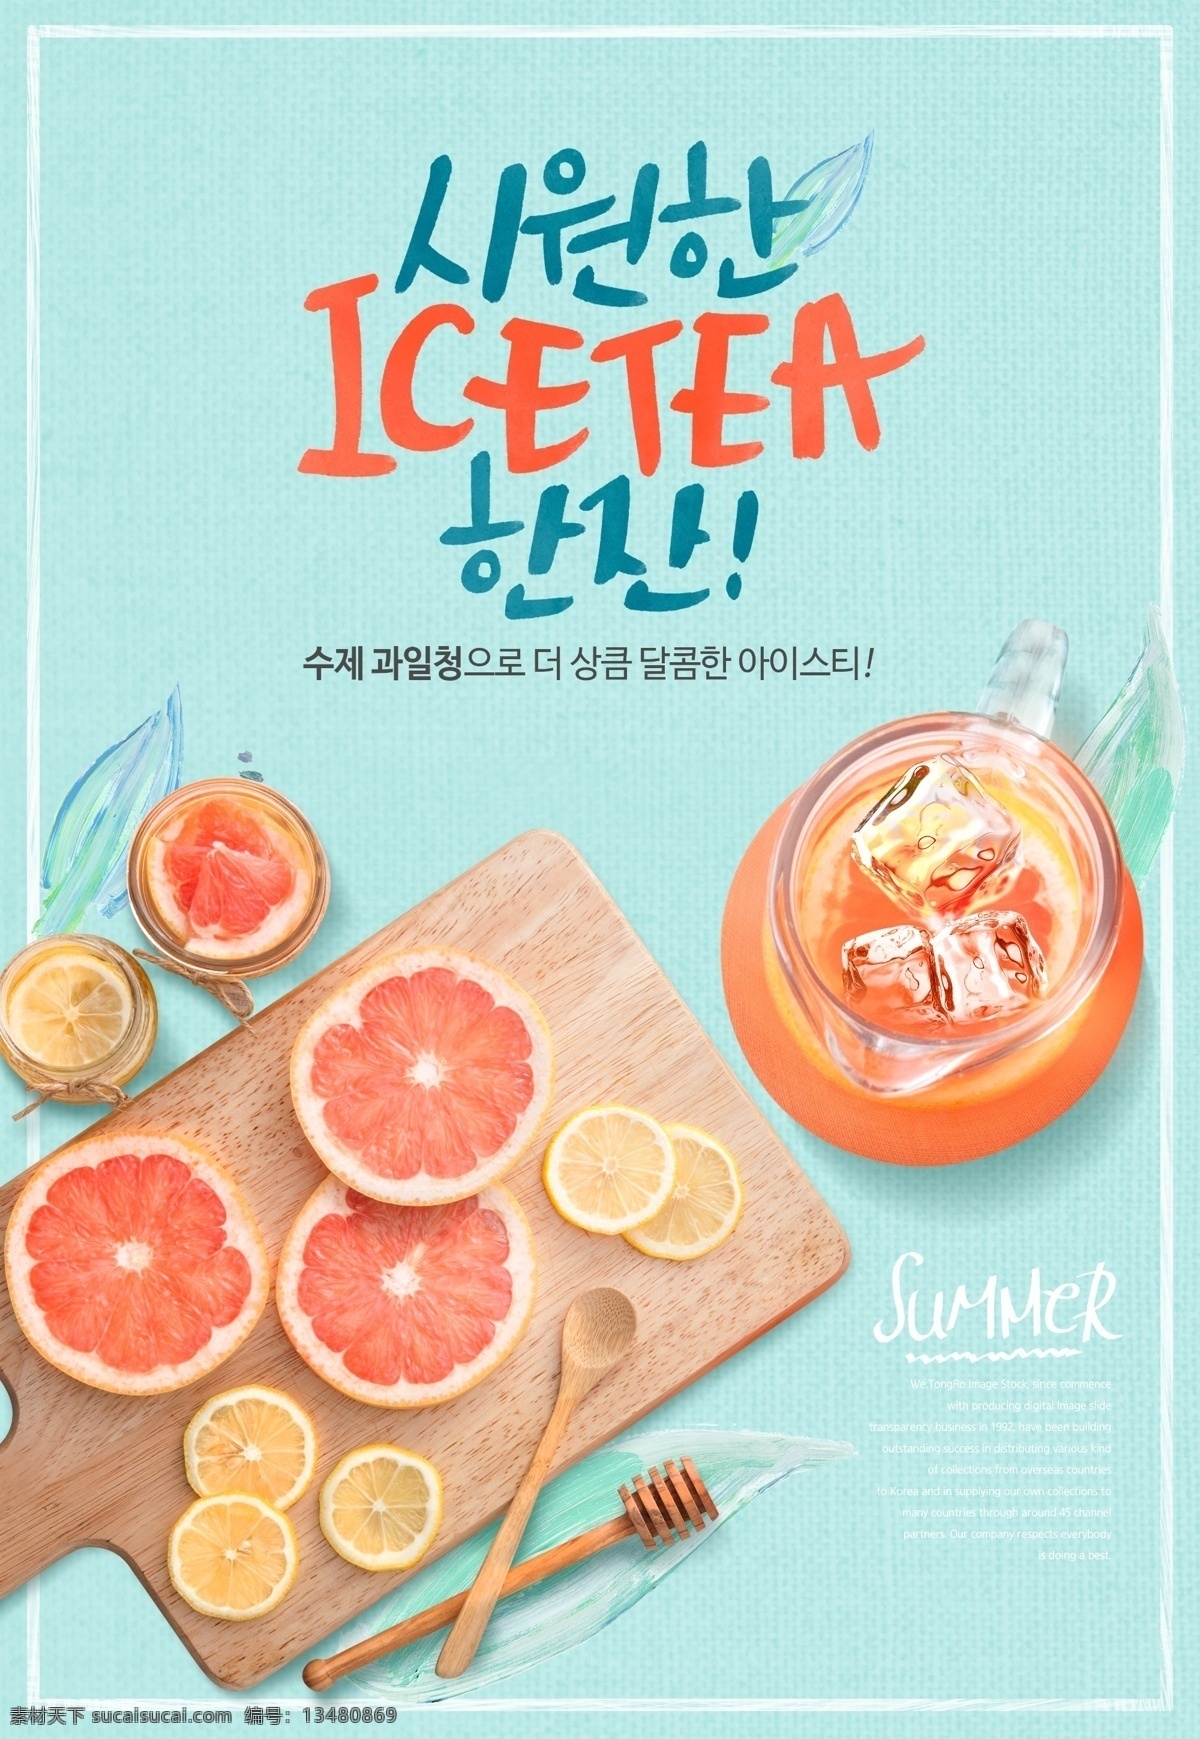 韩 系 夏日 饮品 柠檬茶 海报 模板 商业海报 海报模板 创意 清新 设计素材 蜂蜜柠檬茶 柠檬片 水果 饮料 饮料促销海报 冰饮料 宣传单 模版